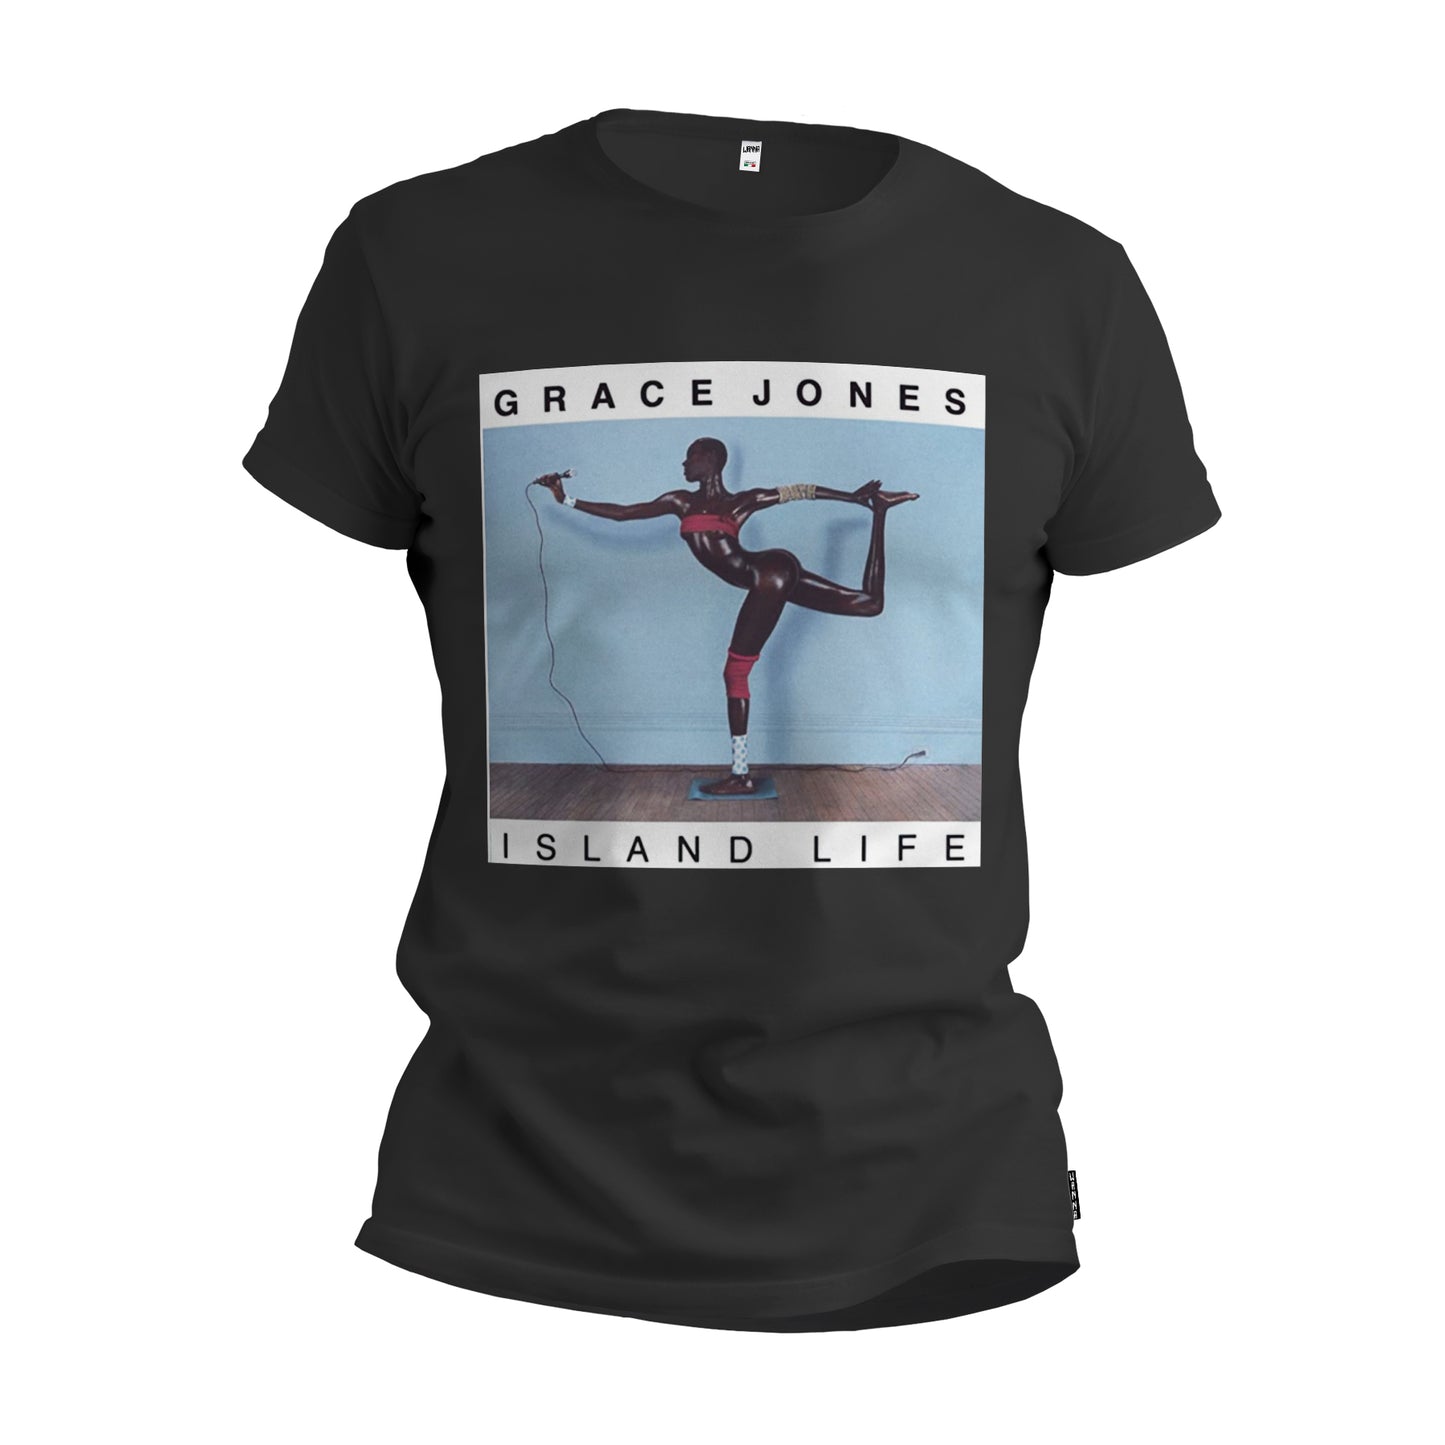 Grace jones- T-Shirt